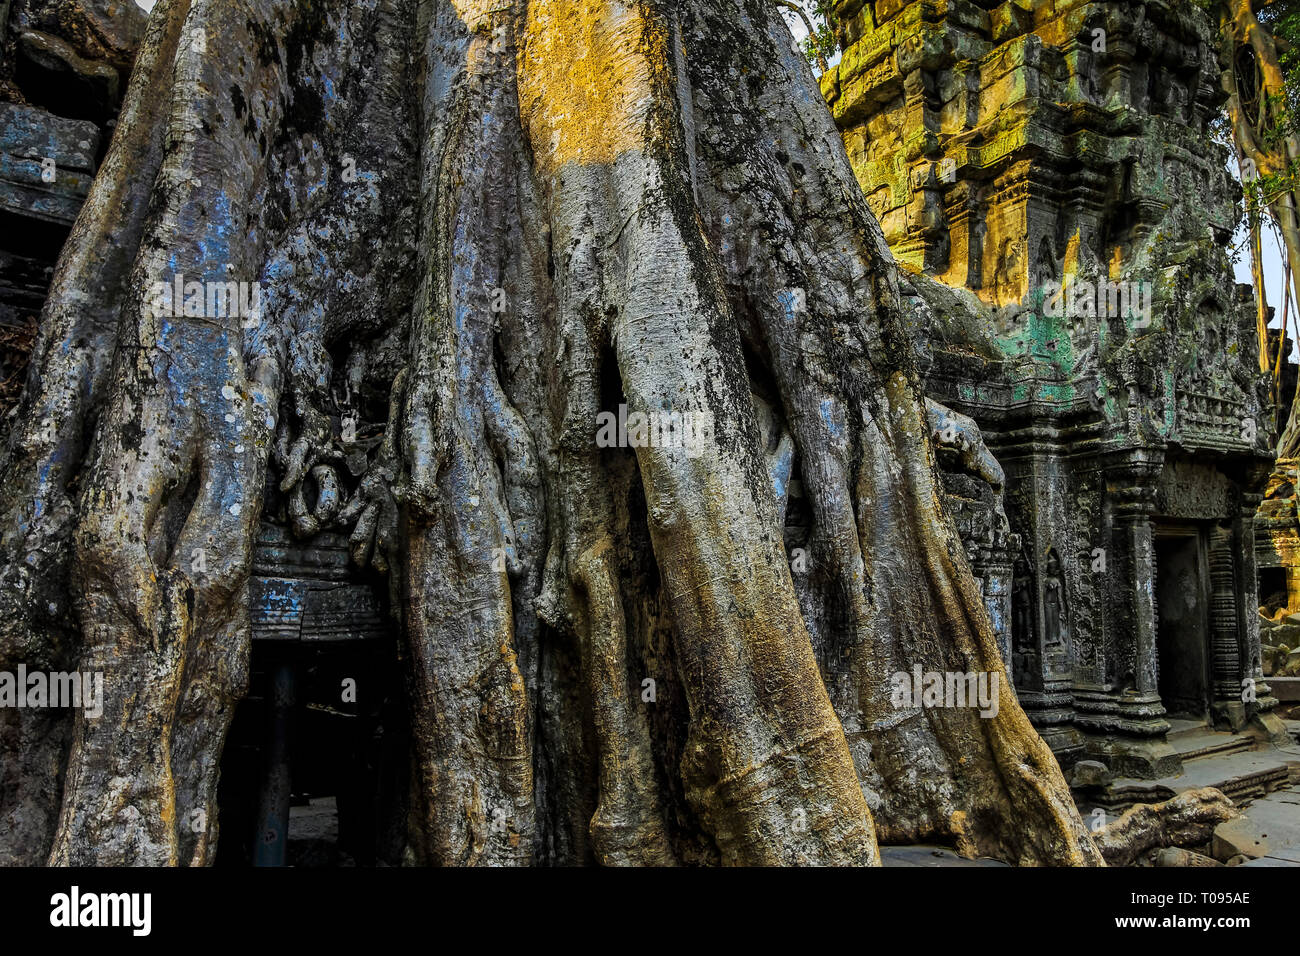 Les racines des arbres couvrant une galerie aux 12thC Ta Prohm temple Khmer, un 'Emplacement' film Tomb Raider. Angkor, Siem Reap, Cambodge. Banque D'Images